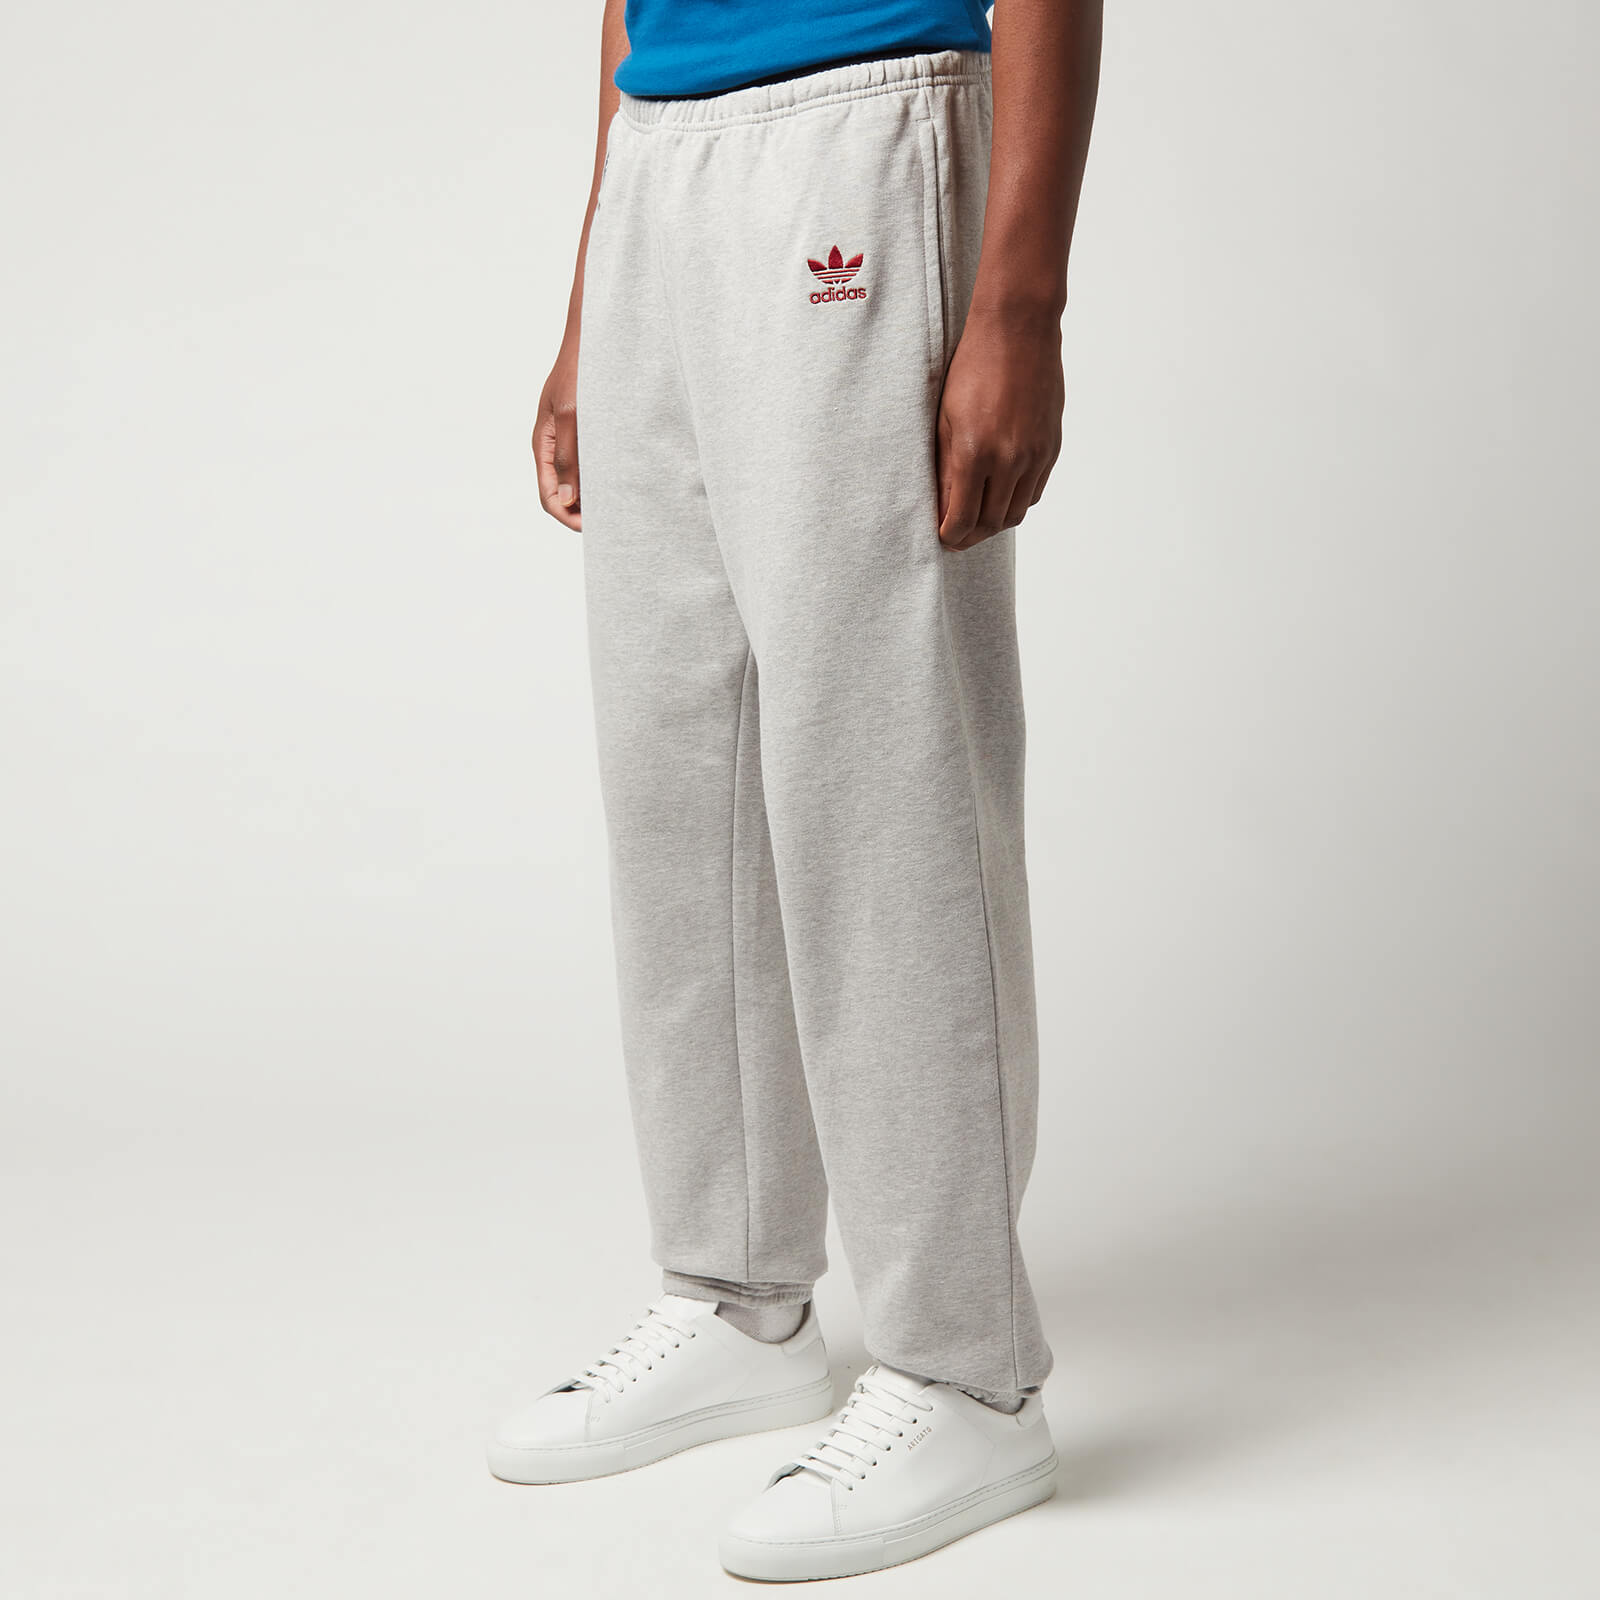 adidas X Wales Bonner Men's Fleece Pants - Medium Grey Heather - XL